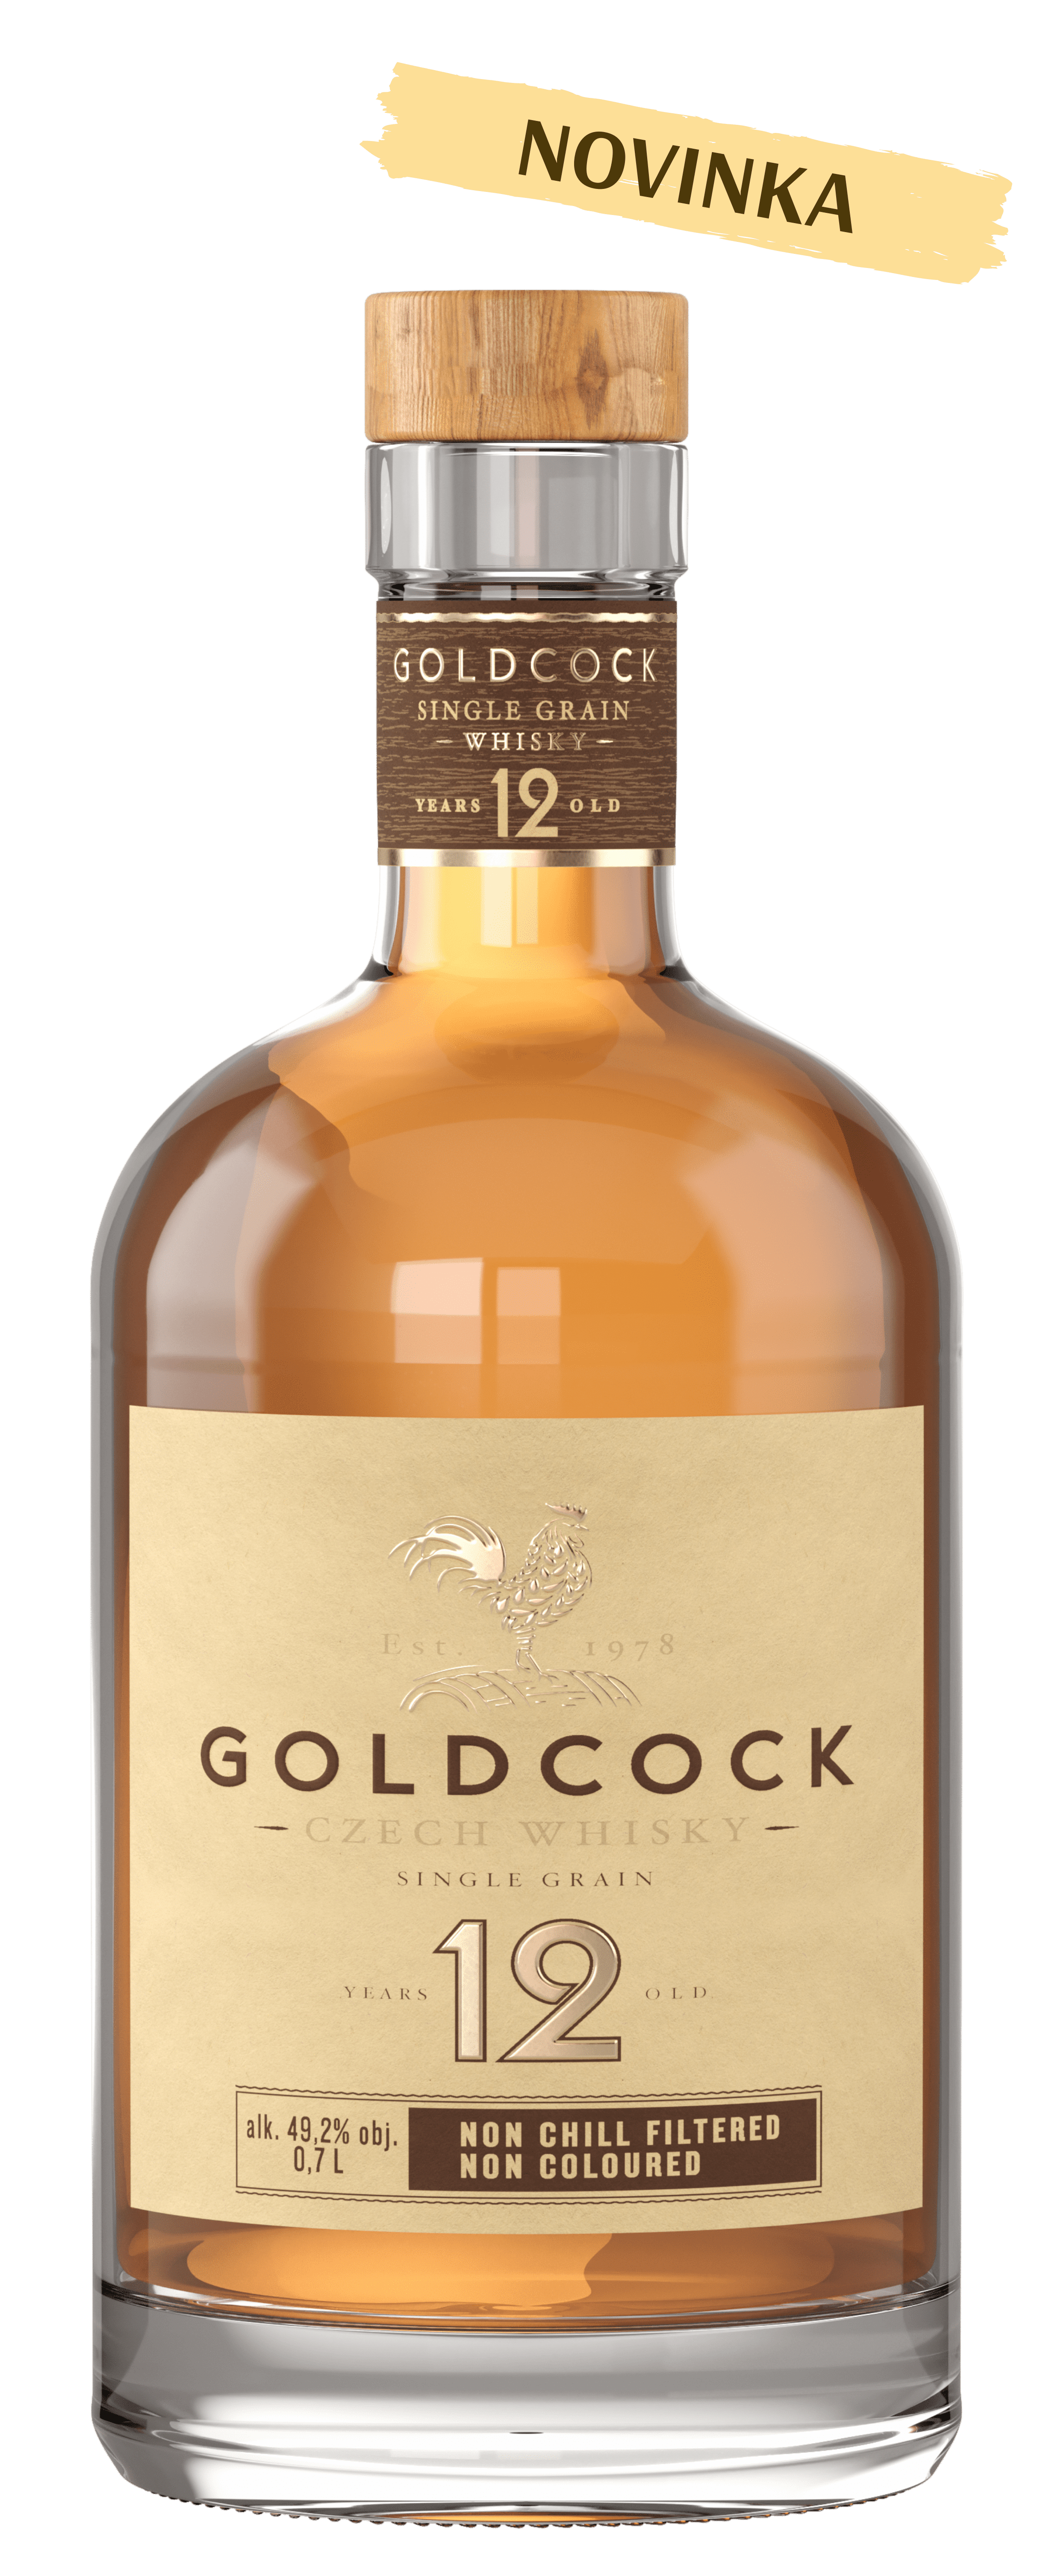 GOLDCOCK SINGLE GRAIN 12YO 49,2% 0,7L